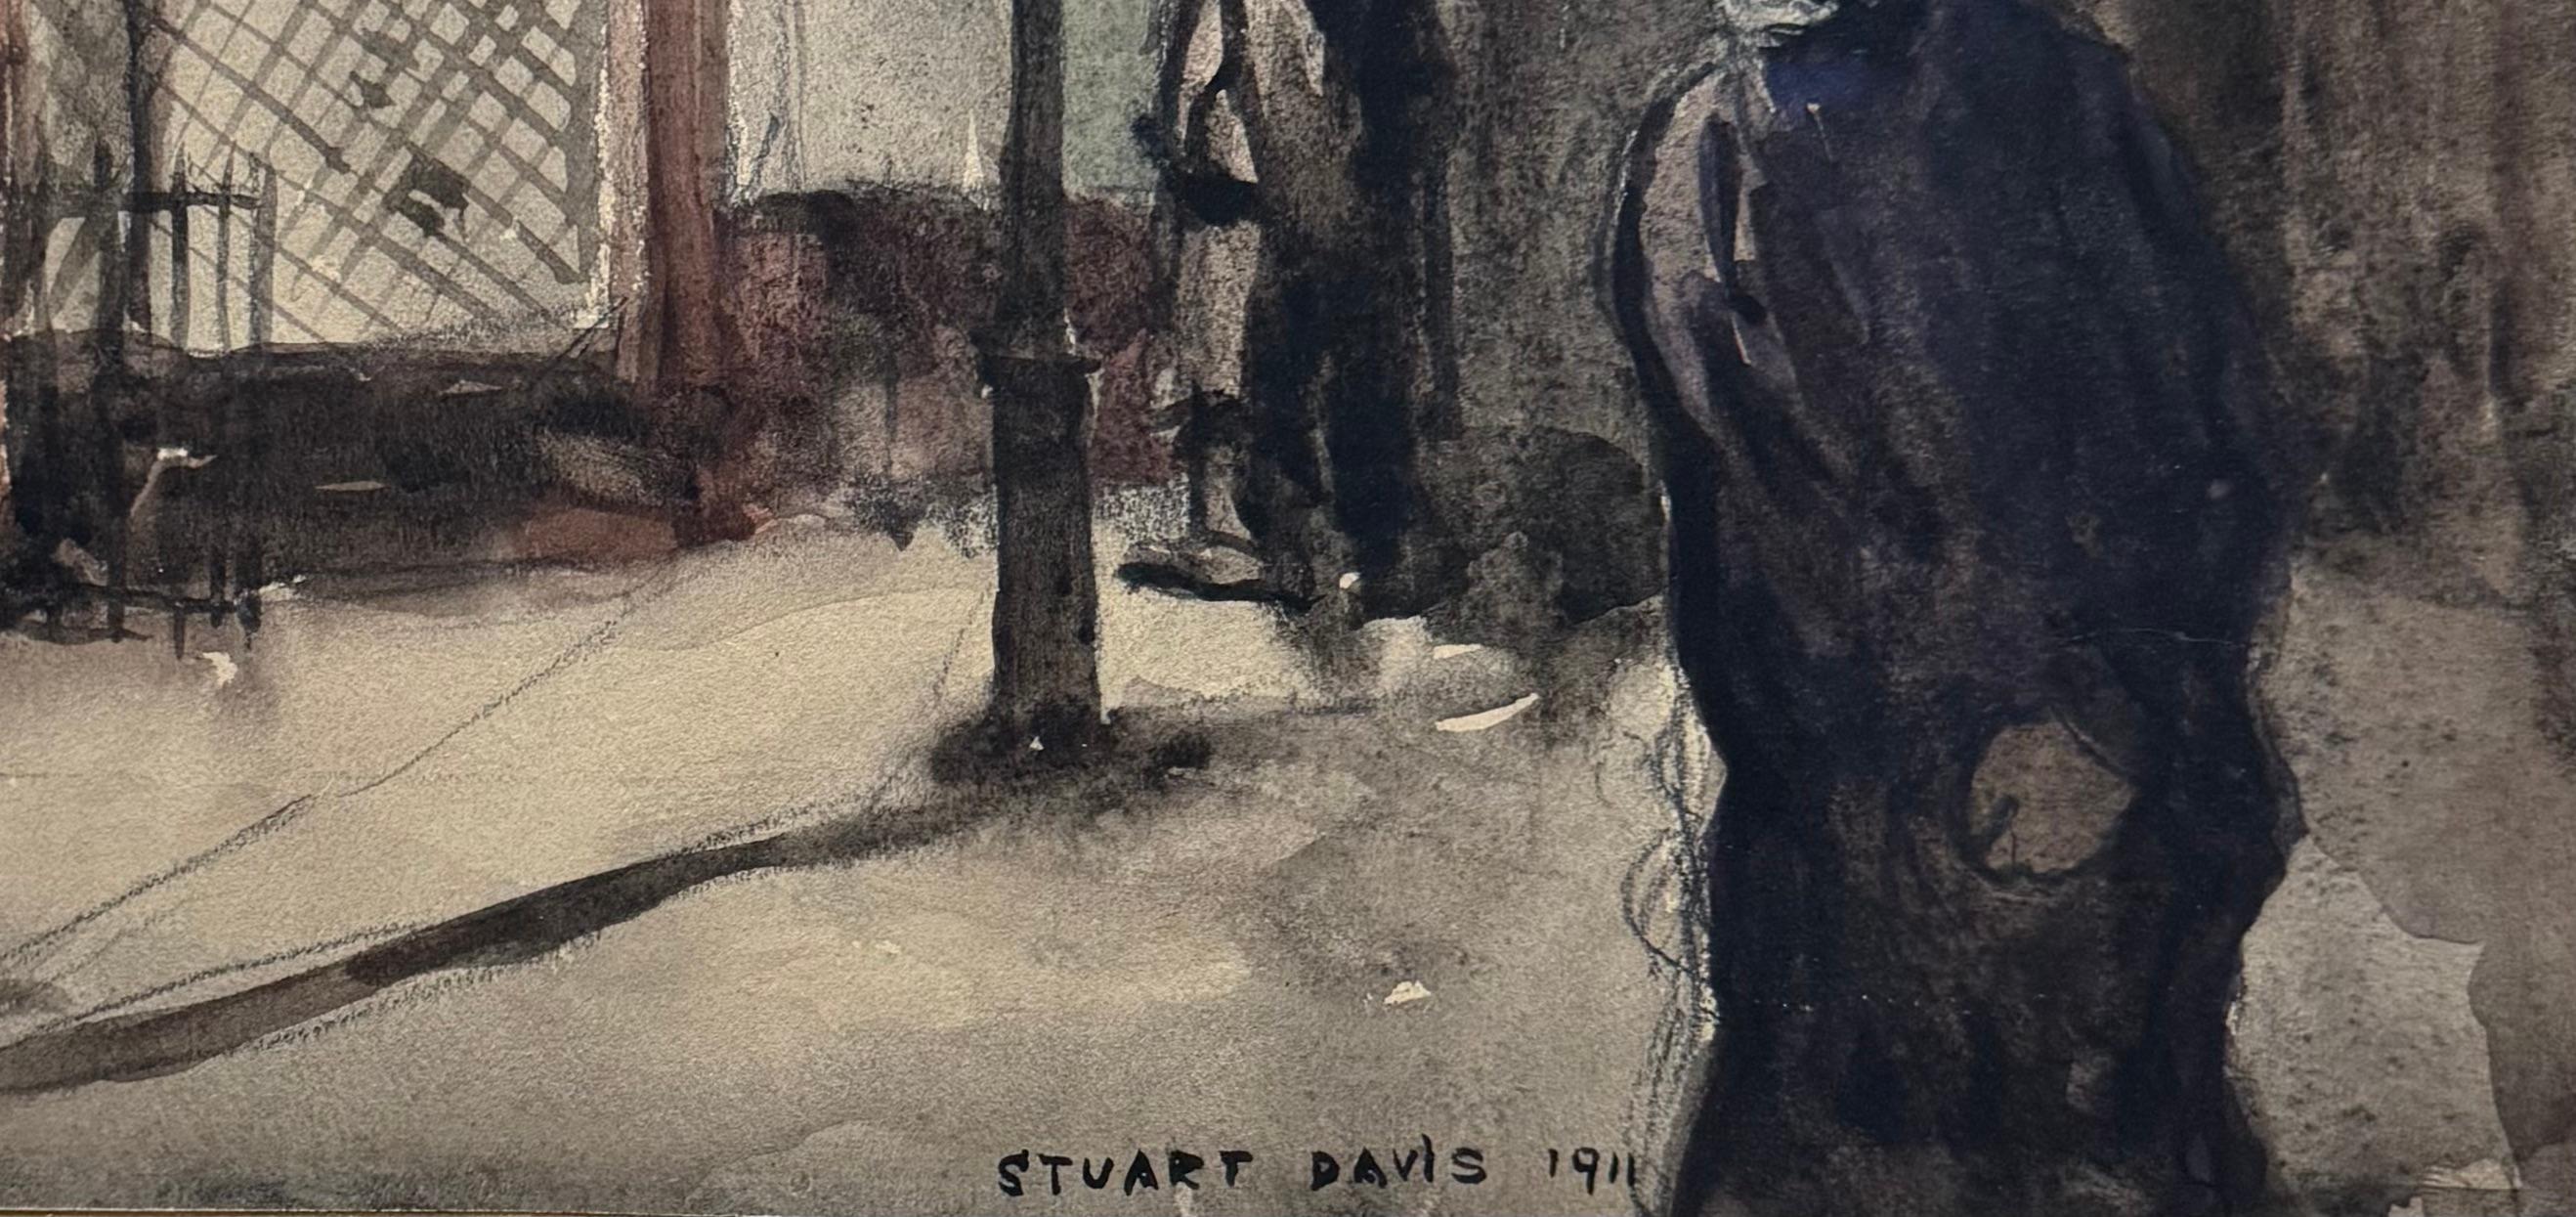 Deux hommes dans une rue début du 20e siècle avec le fauvisme social réaliste américain - Art de Stuart Davis